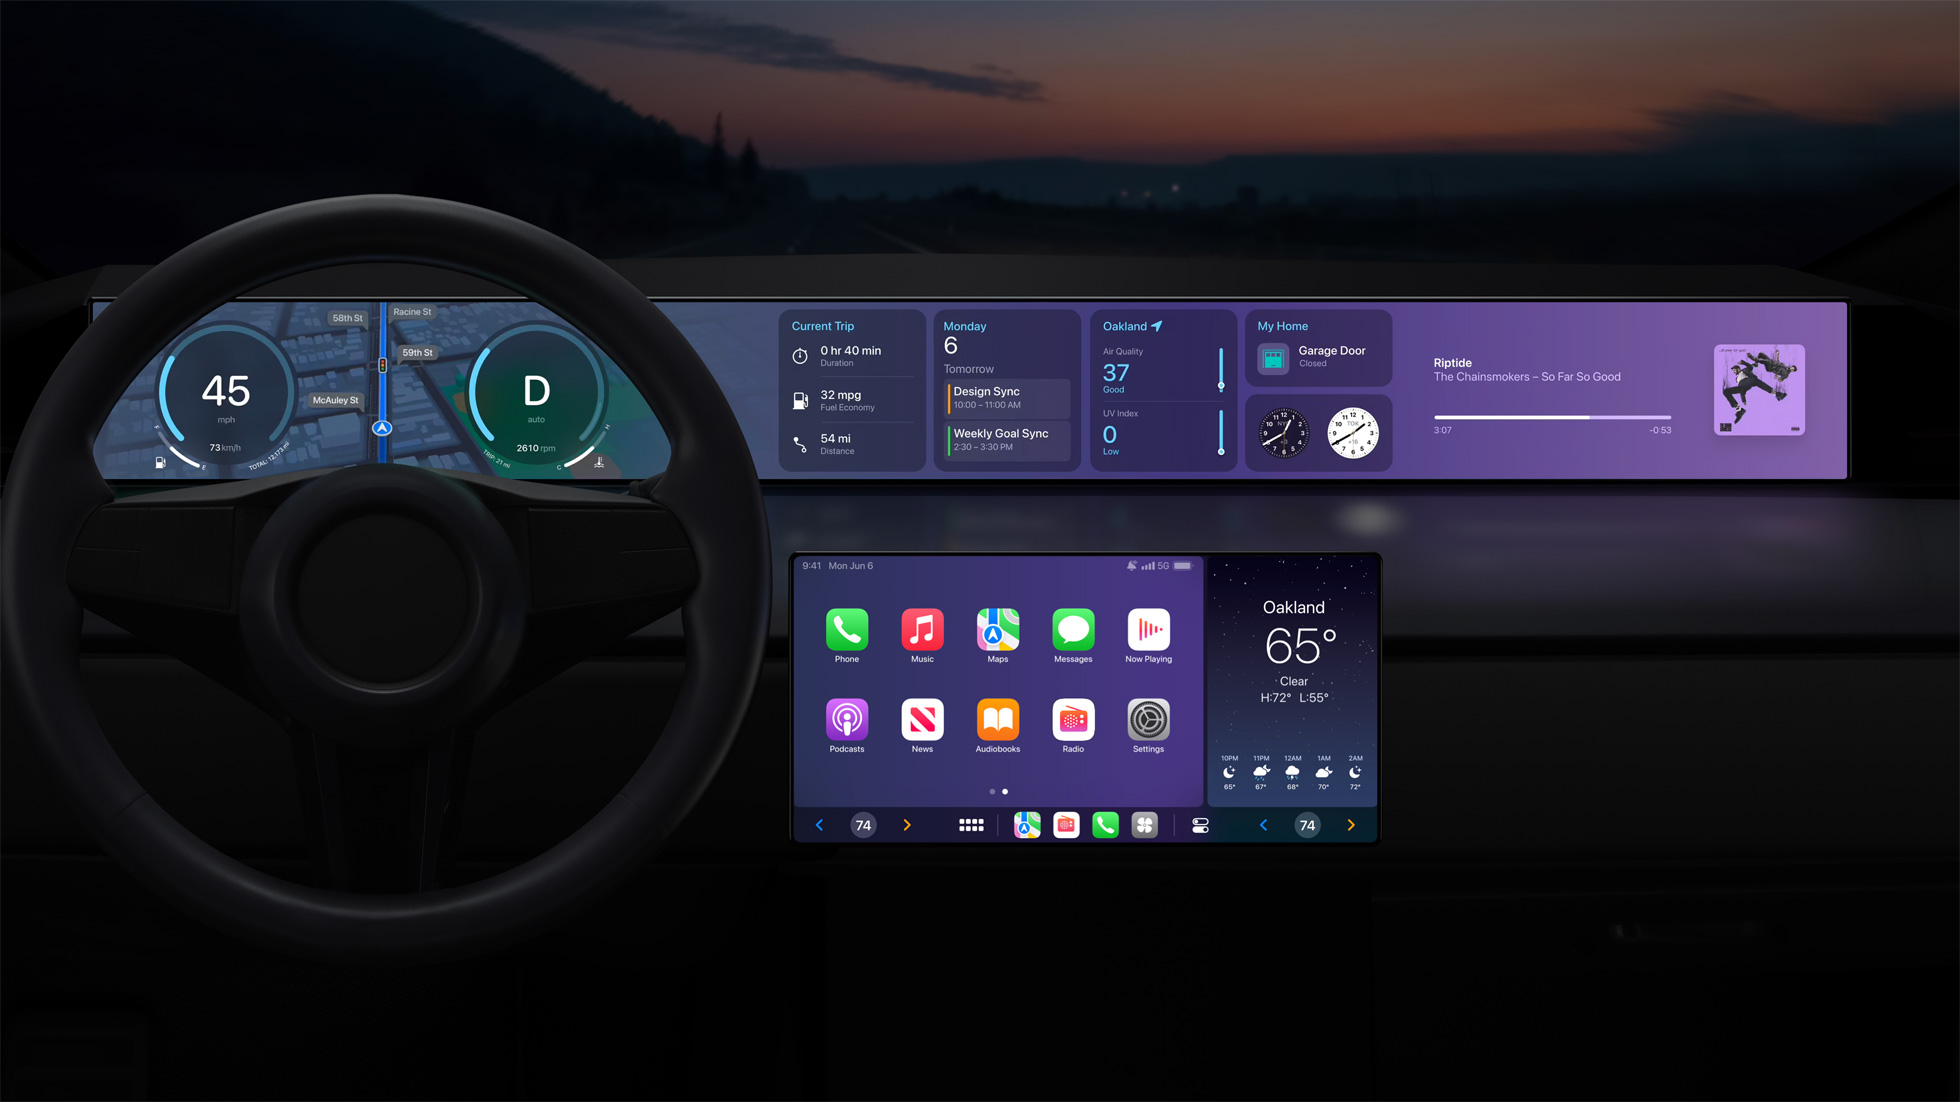 Une étude met en garde contre l'utilisation d'Apple CarPlay et Android Auto  au volant 